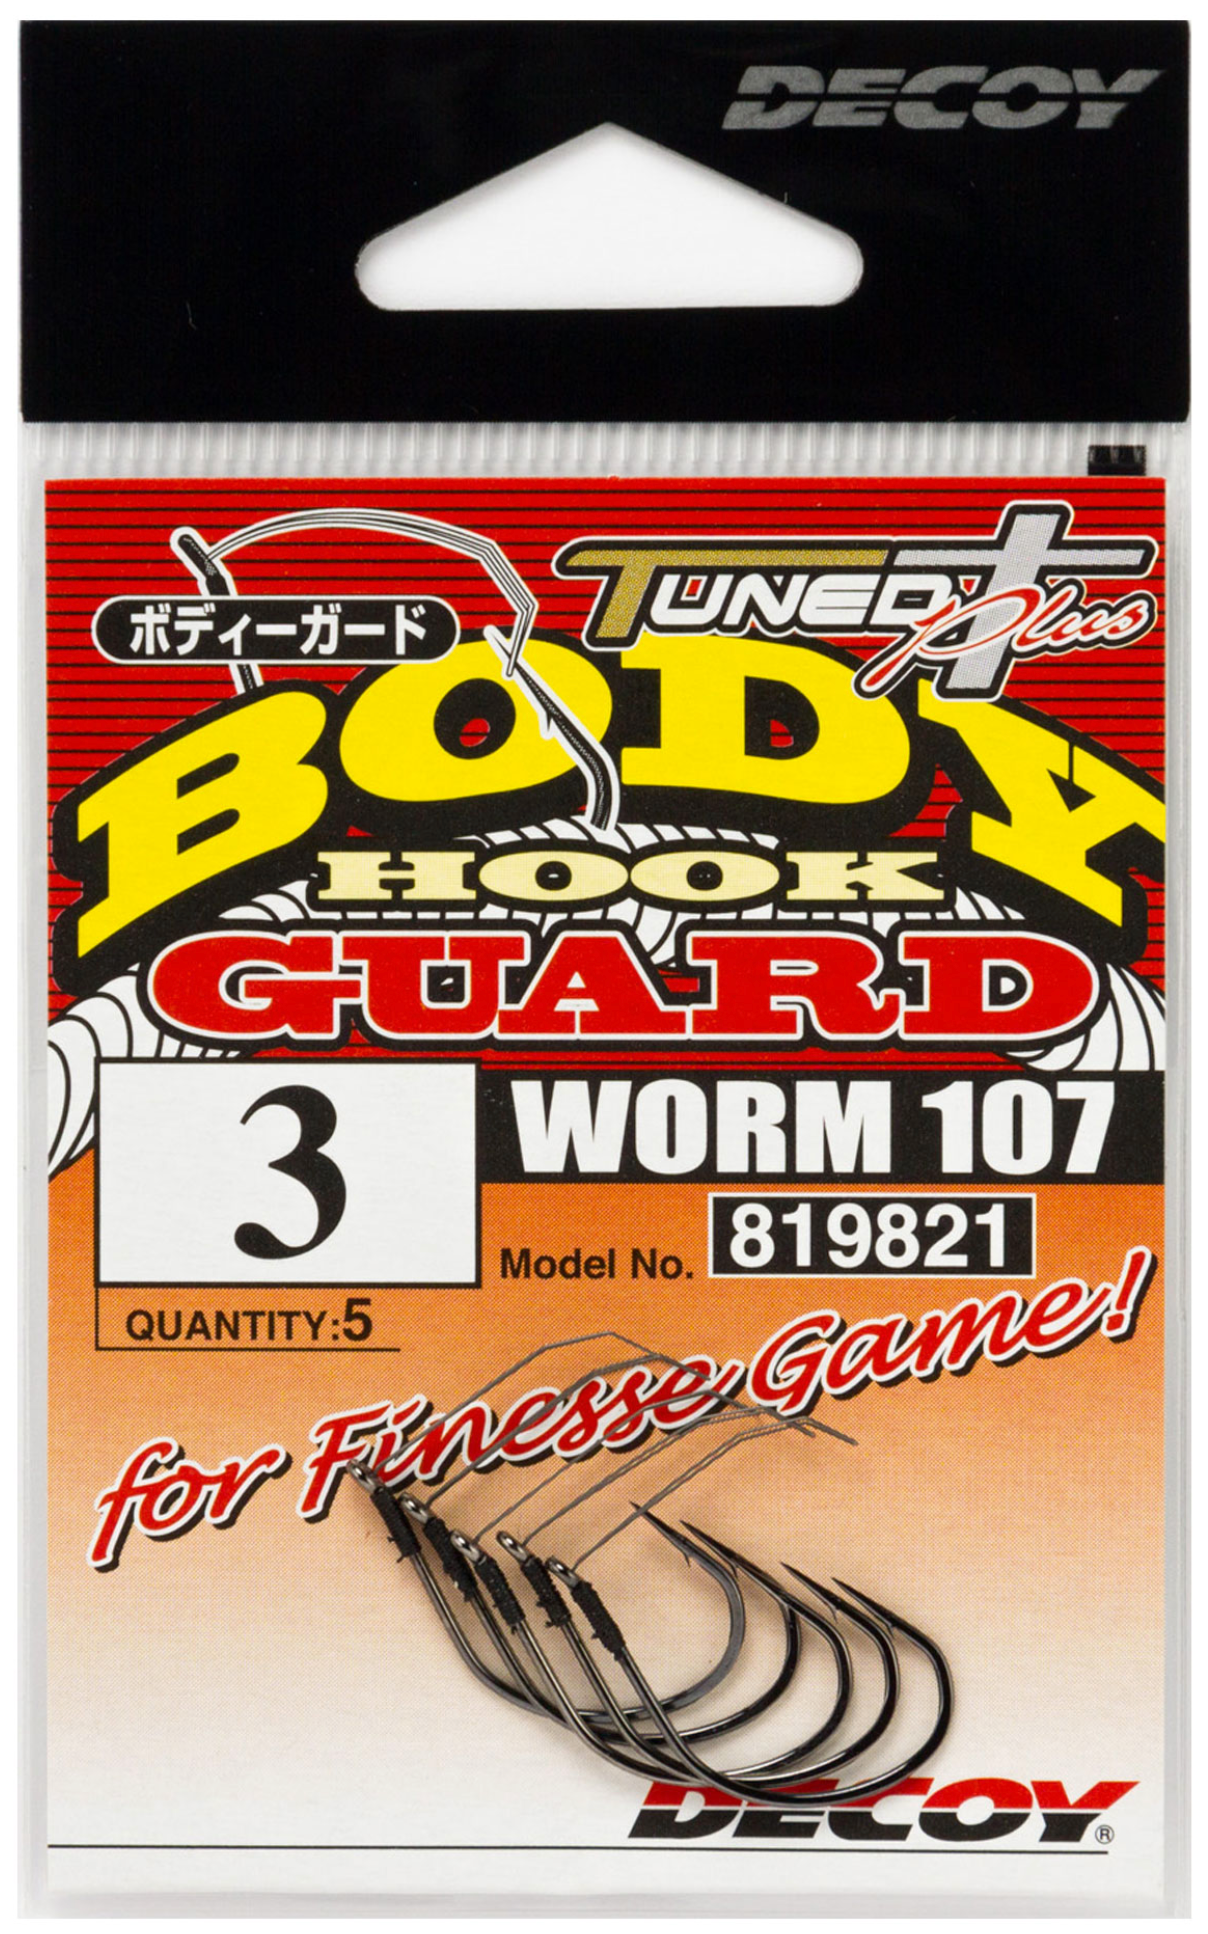 Decoy Worm 107 Body Guard